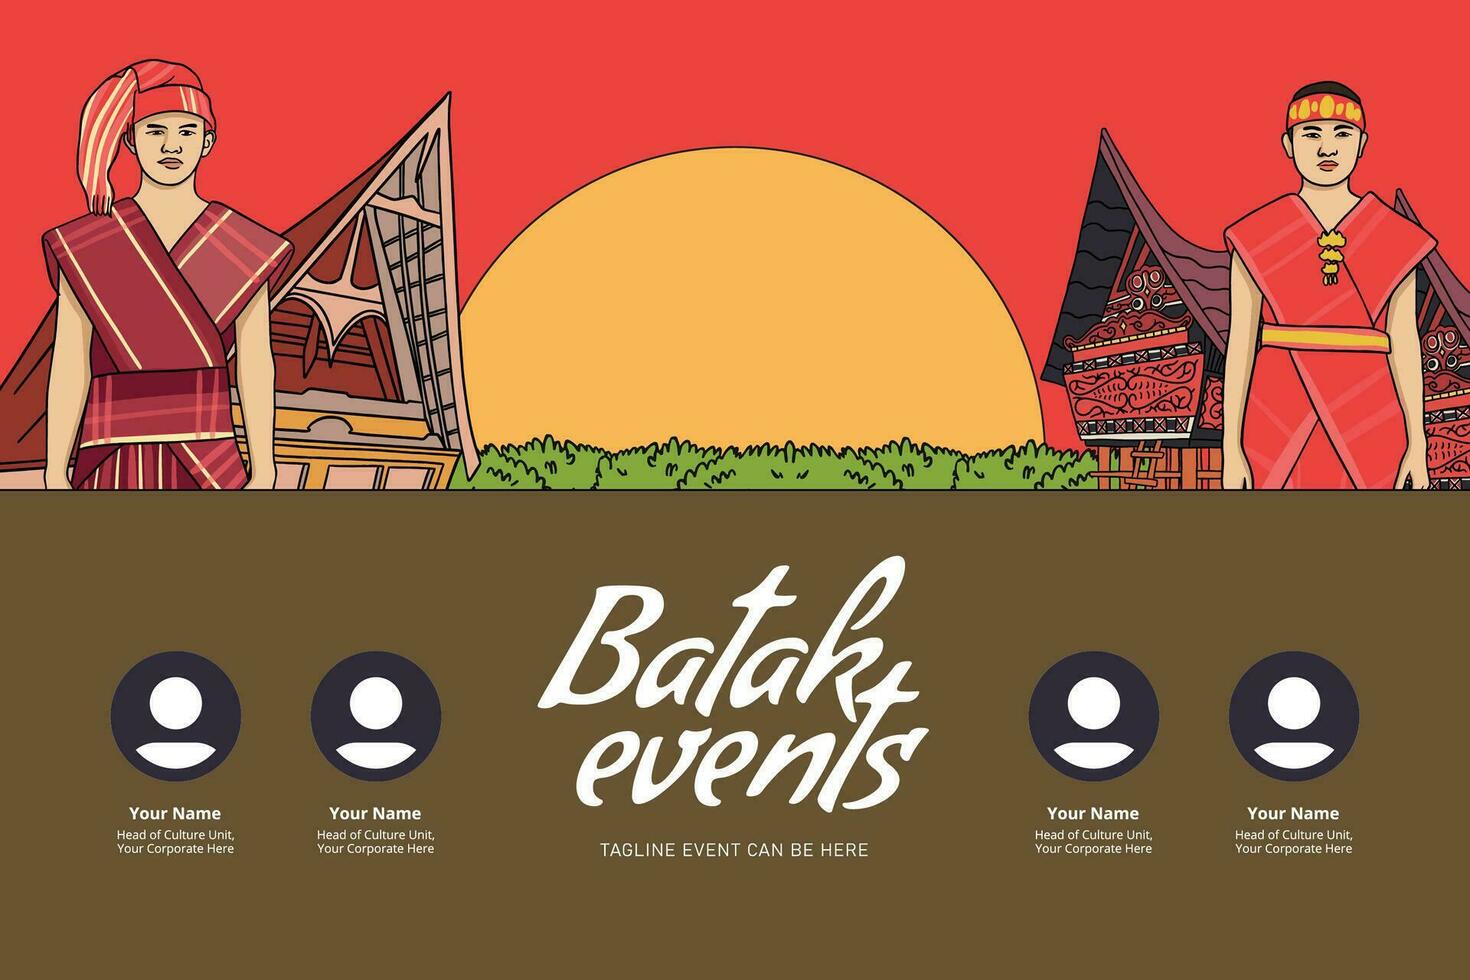 Indonésia bataknese Projeto disposição idéia para social meios de comunicação ou evento fundo vetor